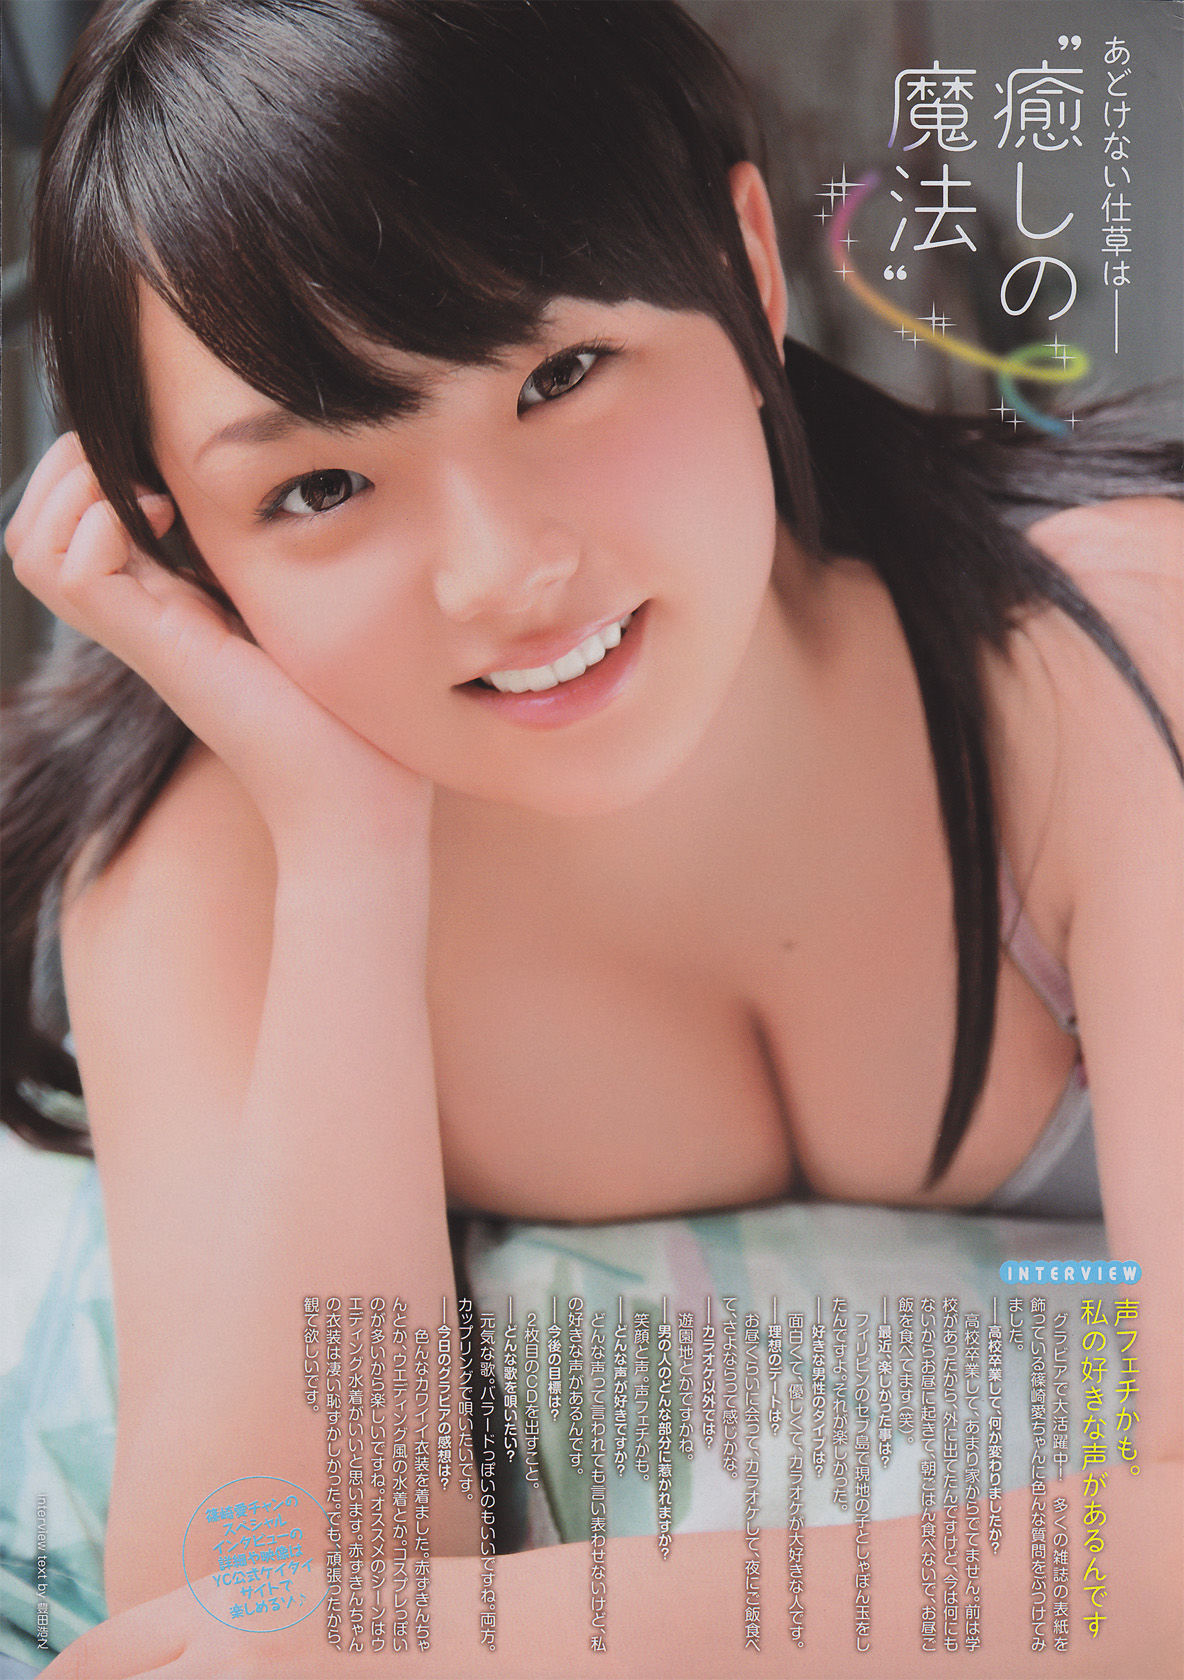 [Young Champion Retsu] Ai Shinozaki 2010 No.10 Photo Magazine Pagina 10 No.bc4895